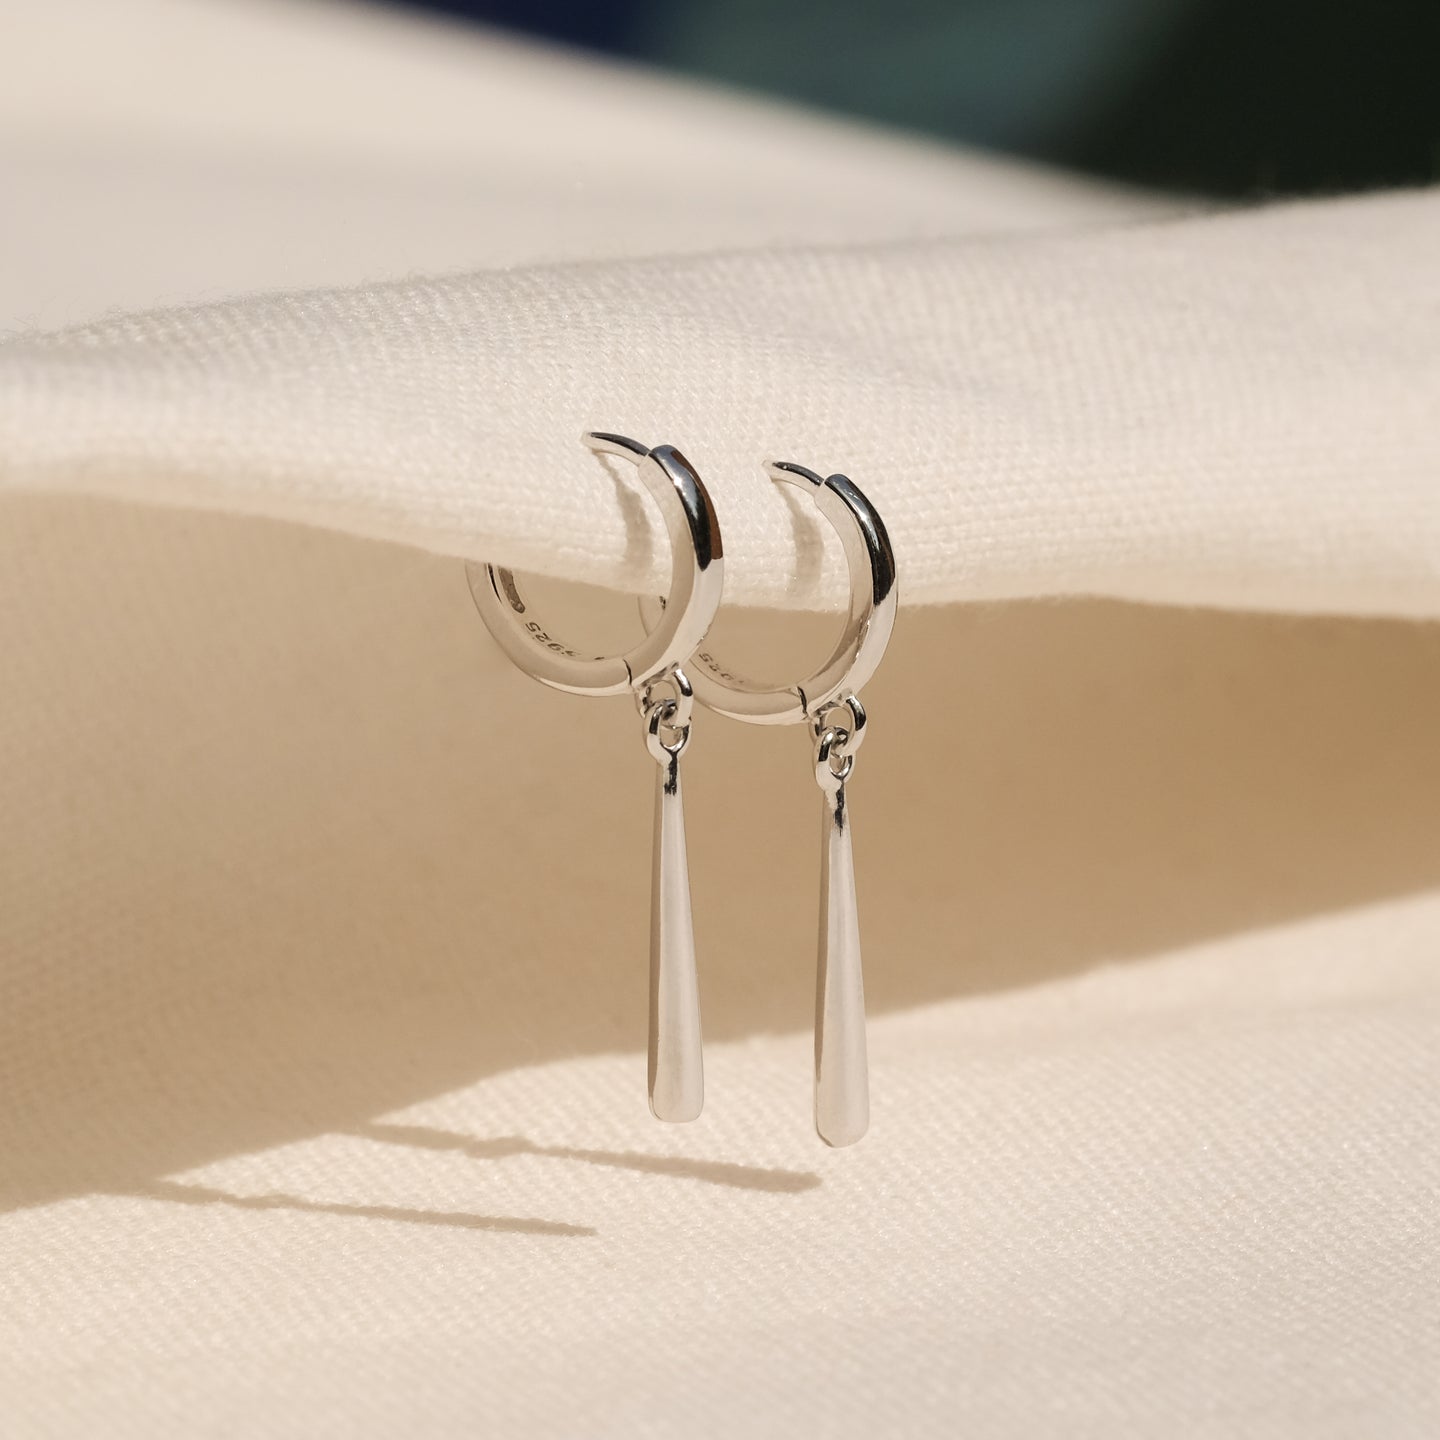 products/nenet-earrings-925-sterling-silver-1.jpg